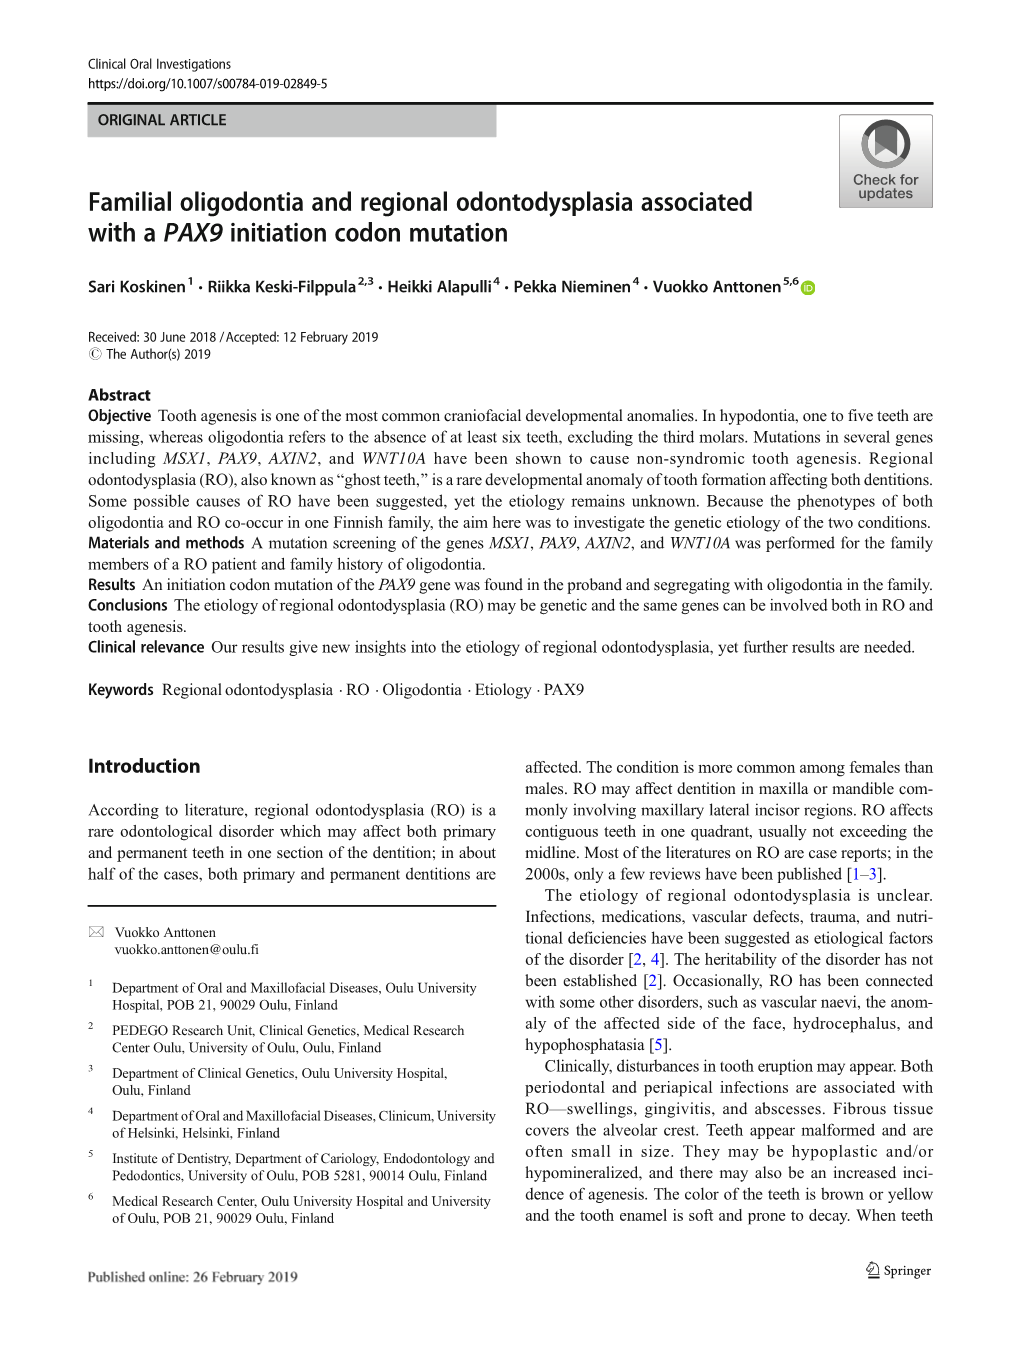 Familial Oligodontia and Regional Odontodysplasia Associated with a PAX9 Initiation Codon Mutation